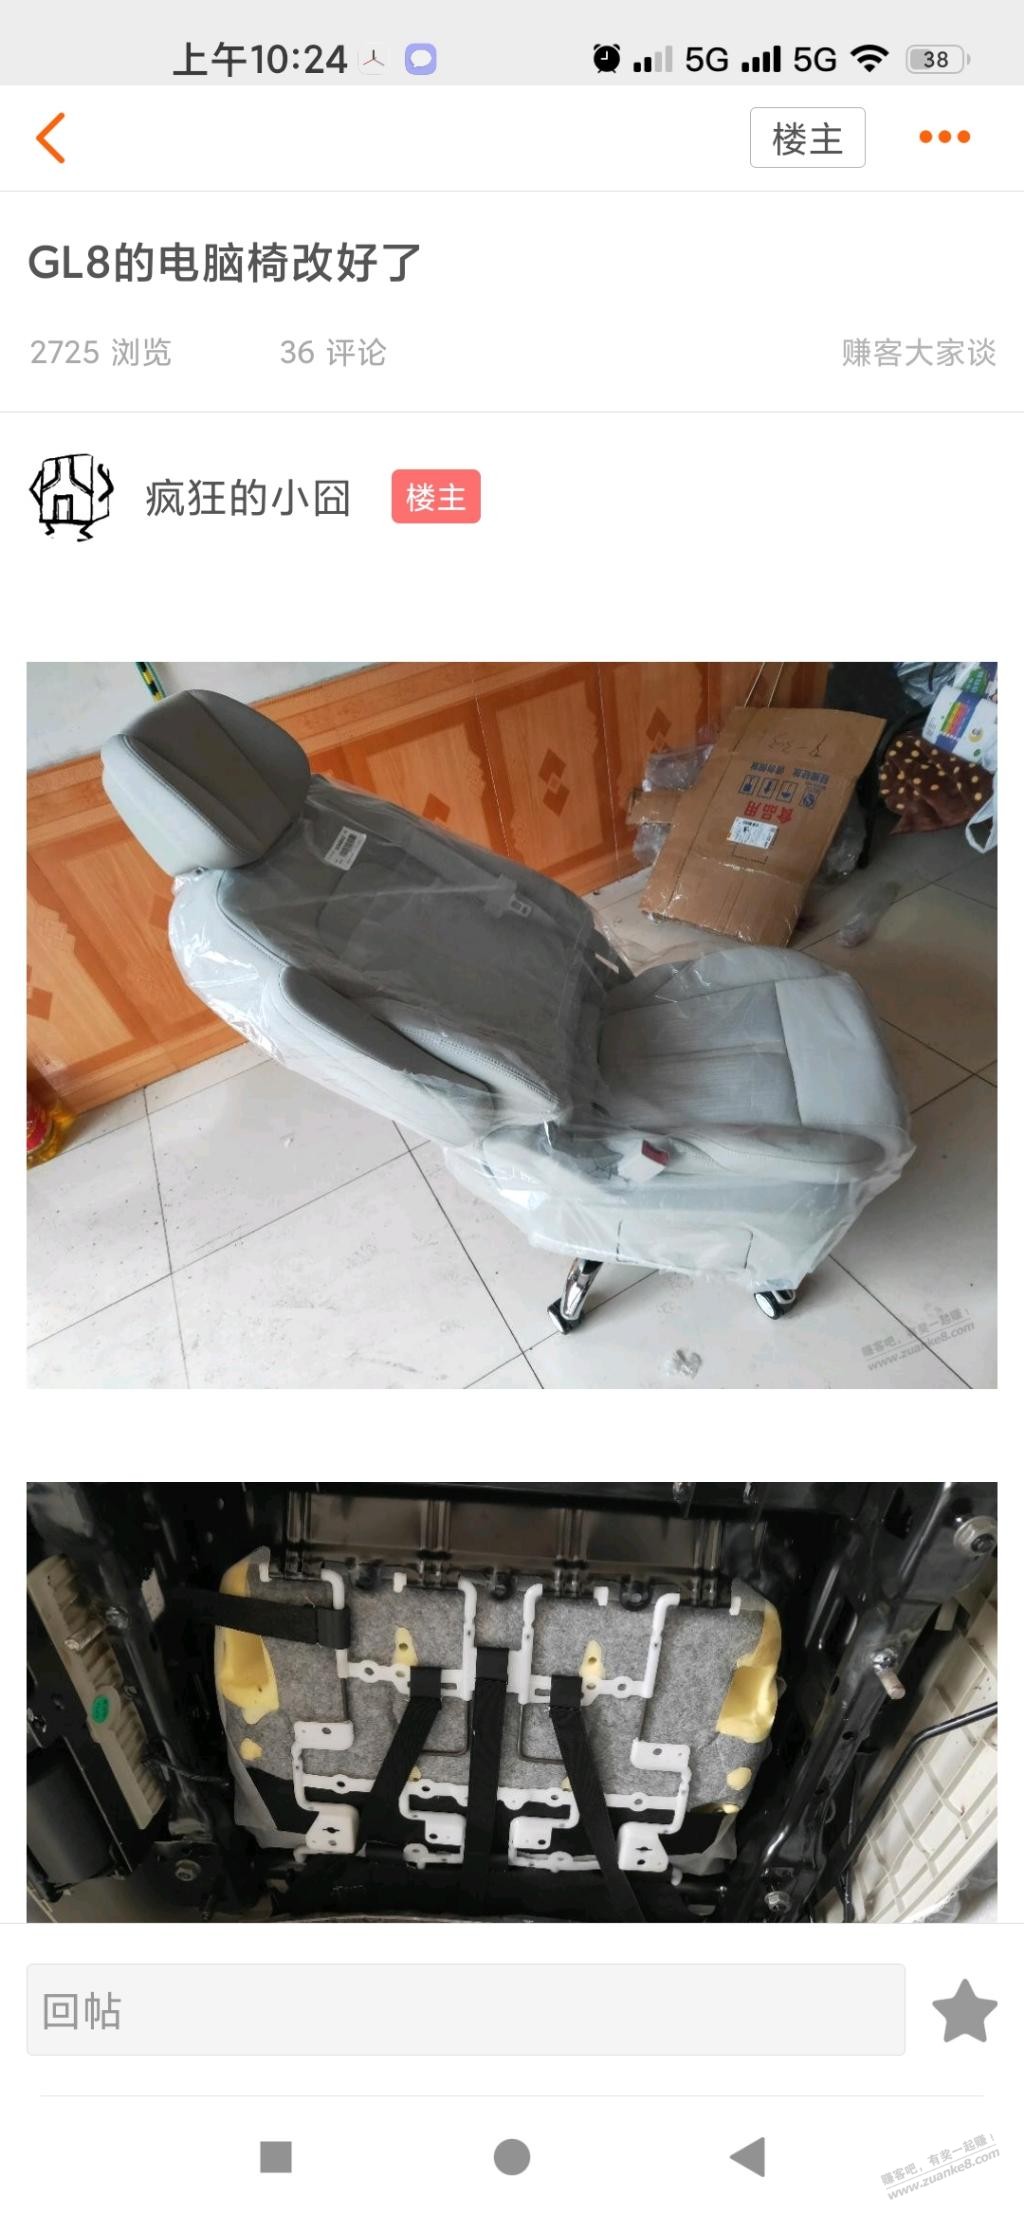 GL8座椅改装作业-惠小助(52huixz.com)